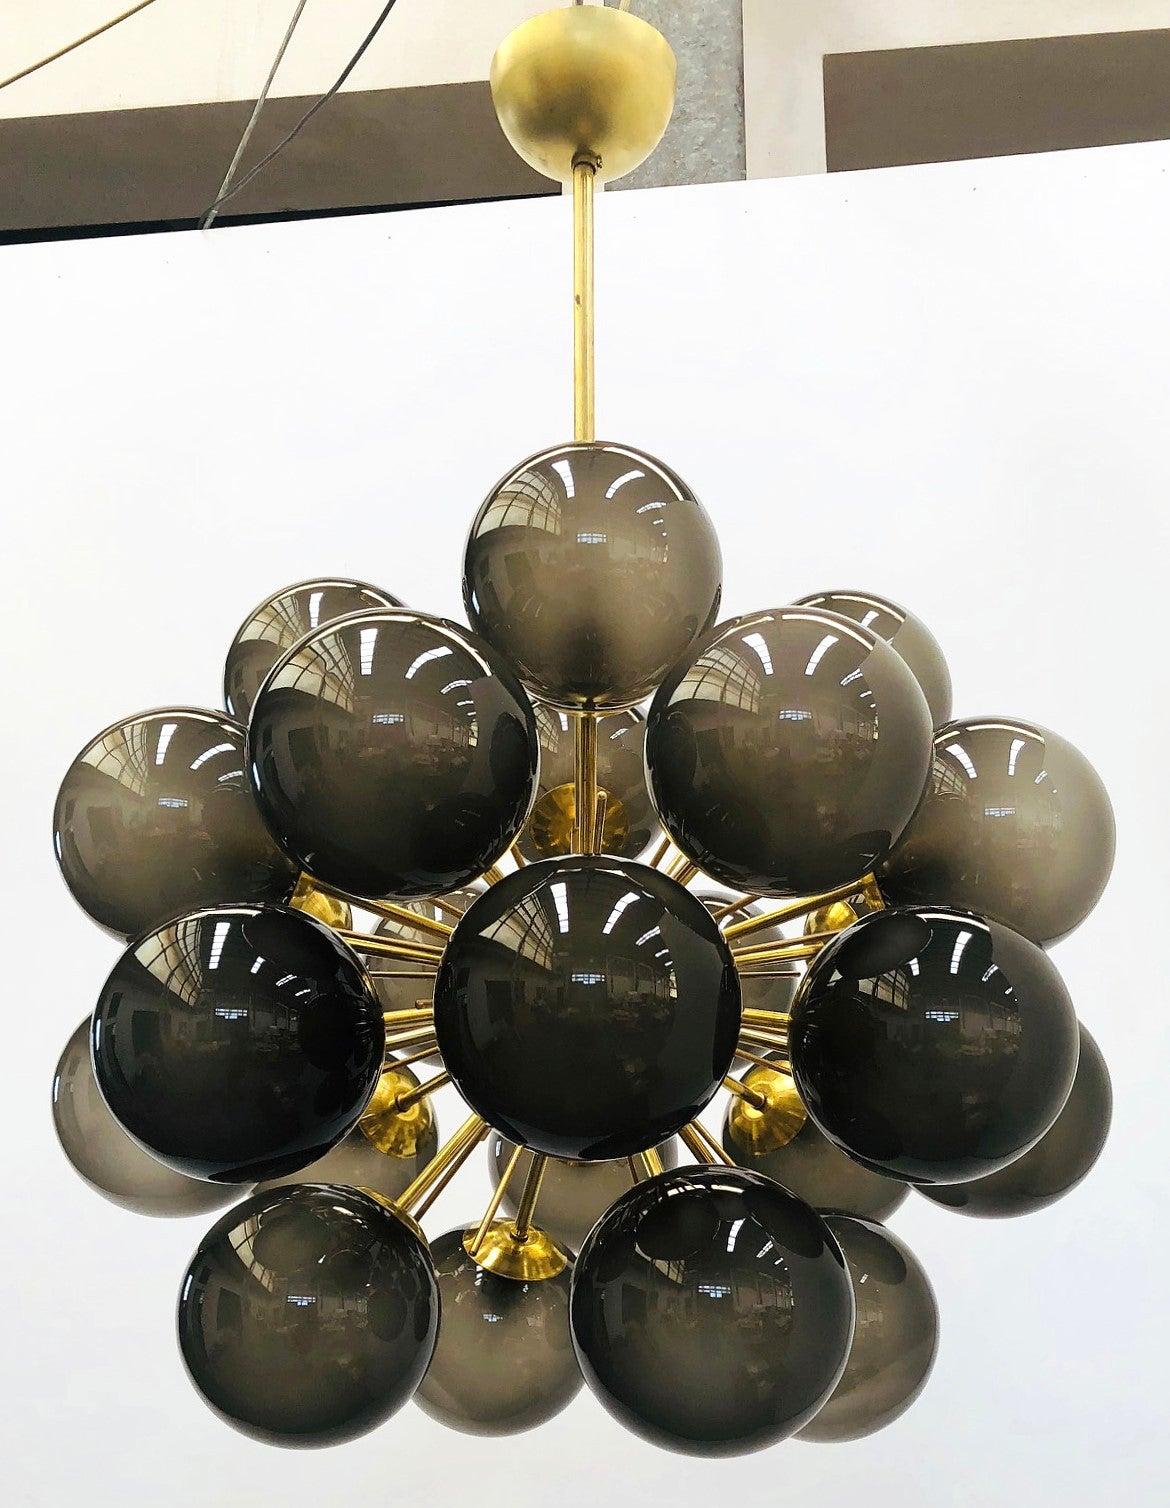 Italienischer Sputnik-Kronleuchter mit 24 Murano-Glaskugeln auf Messingrahmen / Entwurf: Fabio Bergomi für FABIO LTD / Hergestellt in Italien
24 Leuchten / Typ E12 oder E14 / max. 40W pro Stück
Durchmesser: 28 Zoll / Höhe: 39 Zoll einschließlich